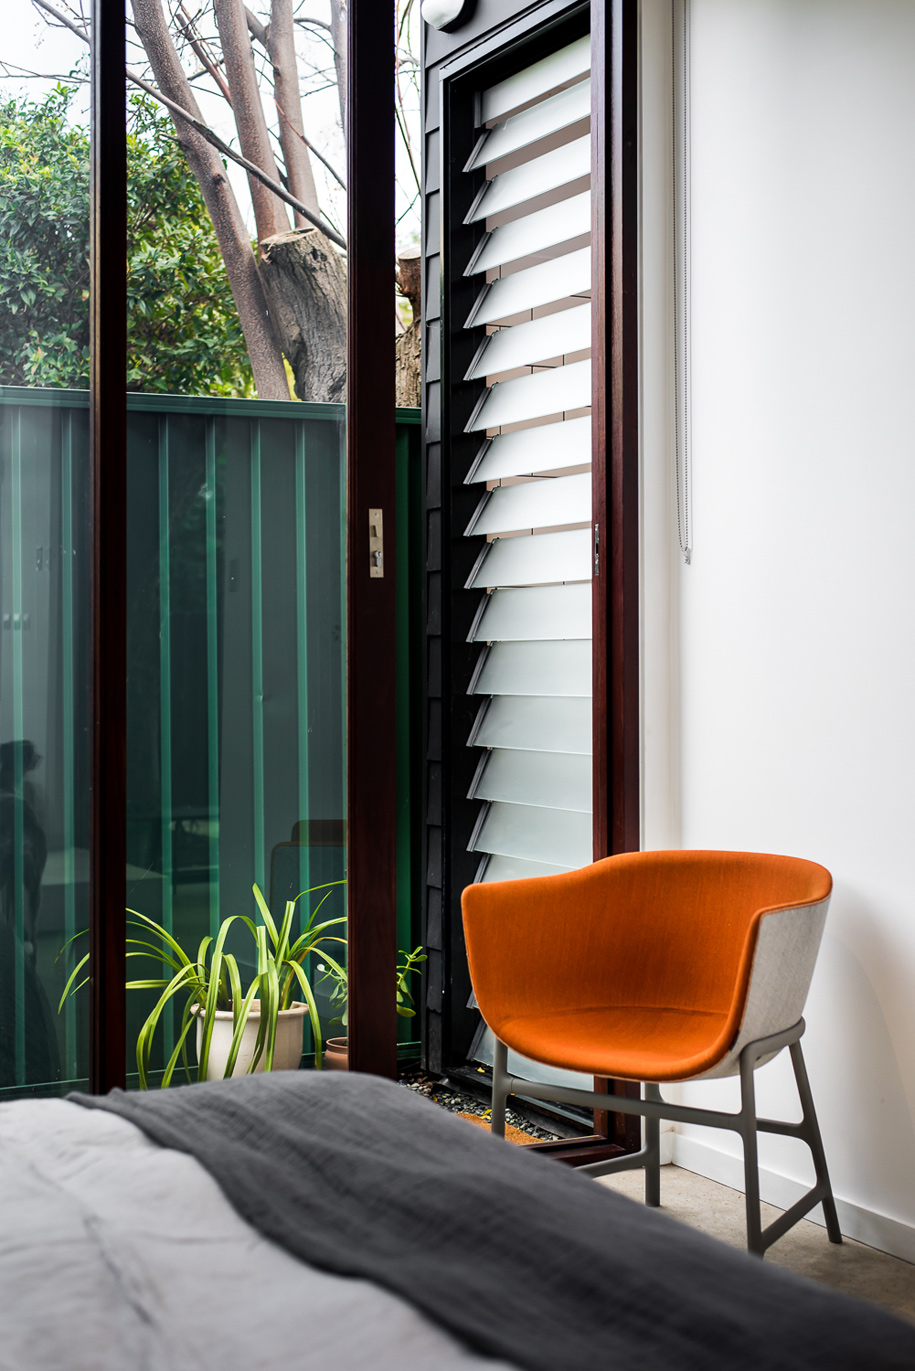 Удобное оранжевое кресло в спальне рядом со сдвижной стеклянной дверью в сад